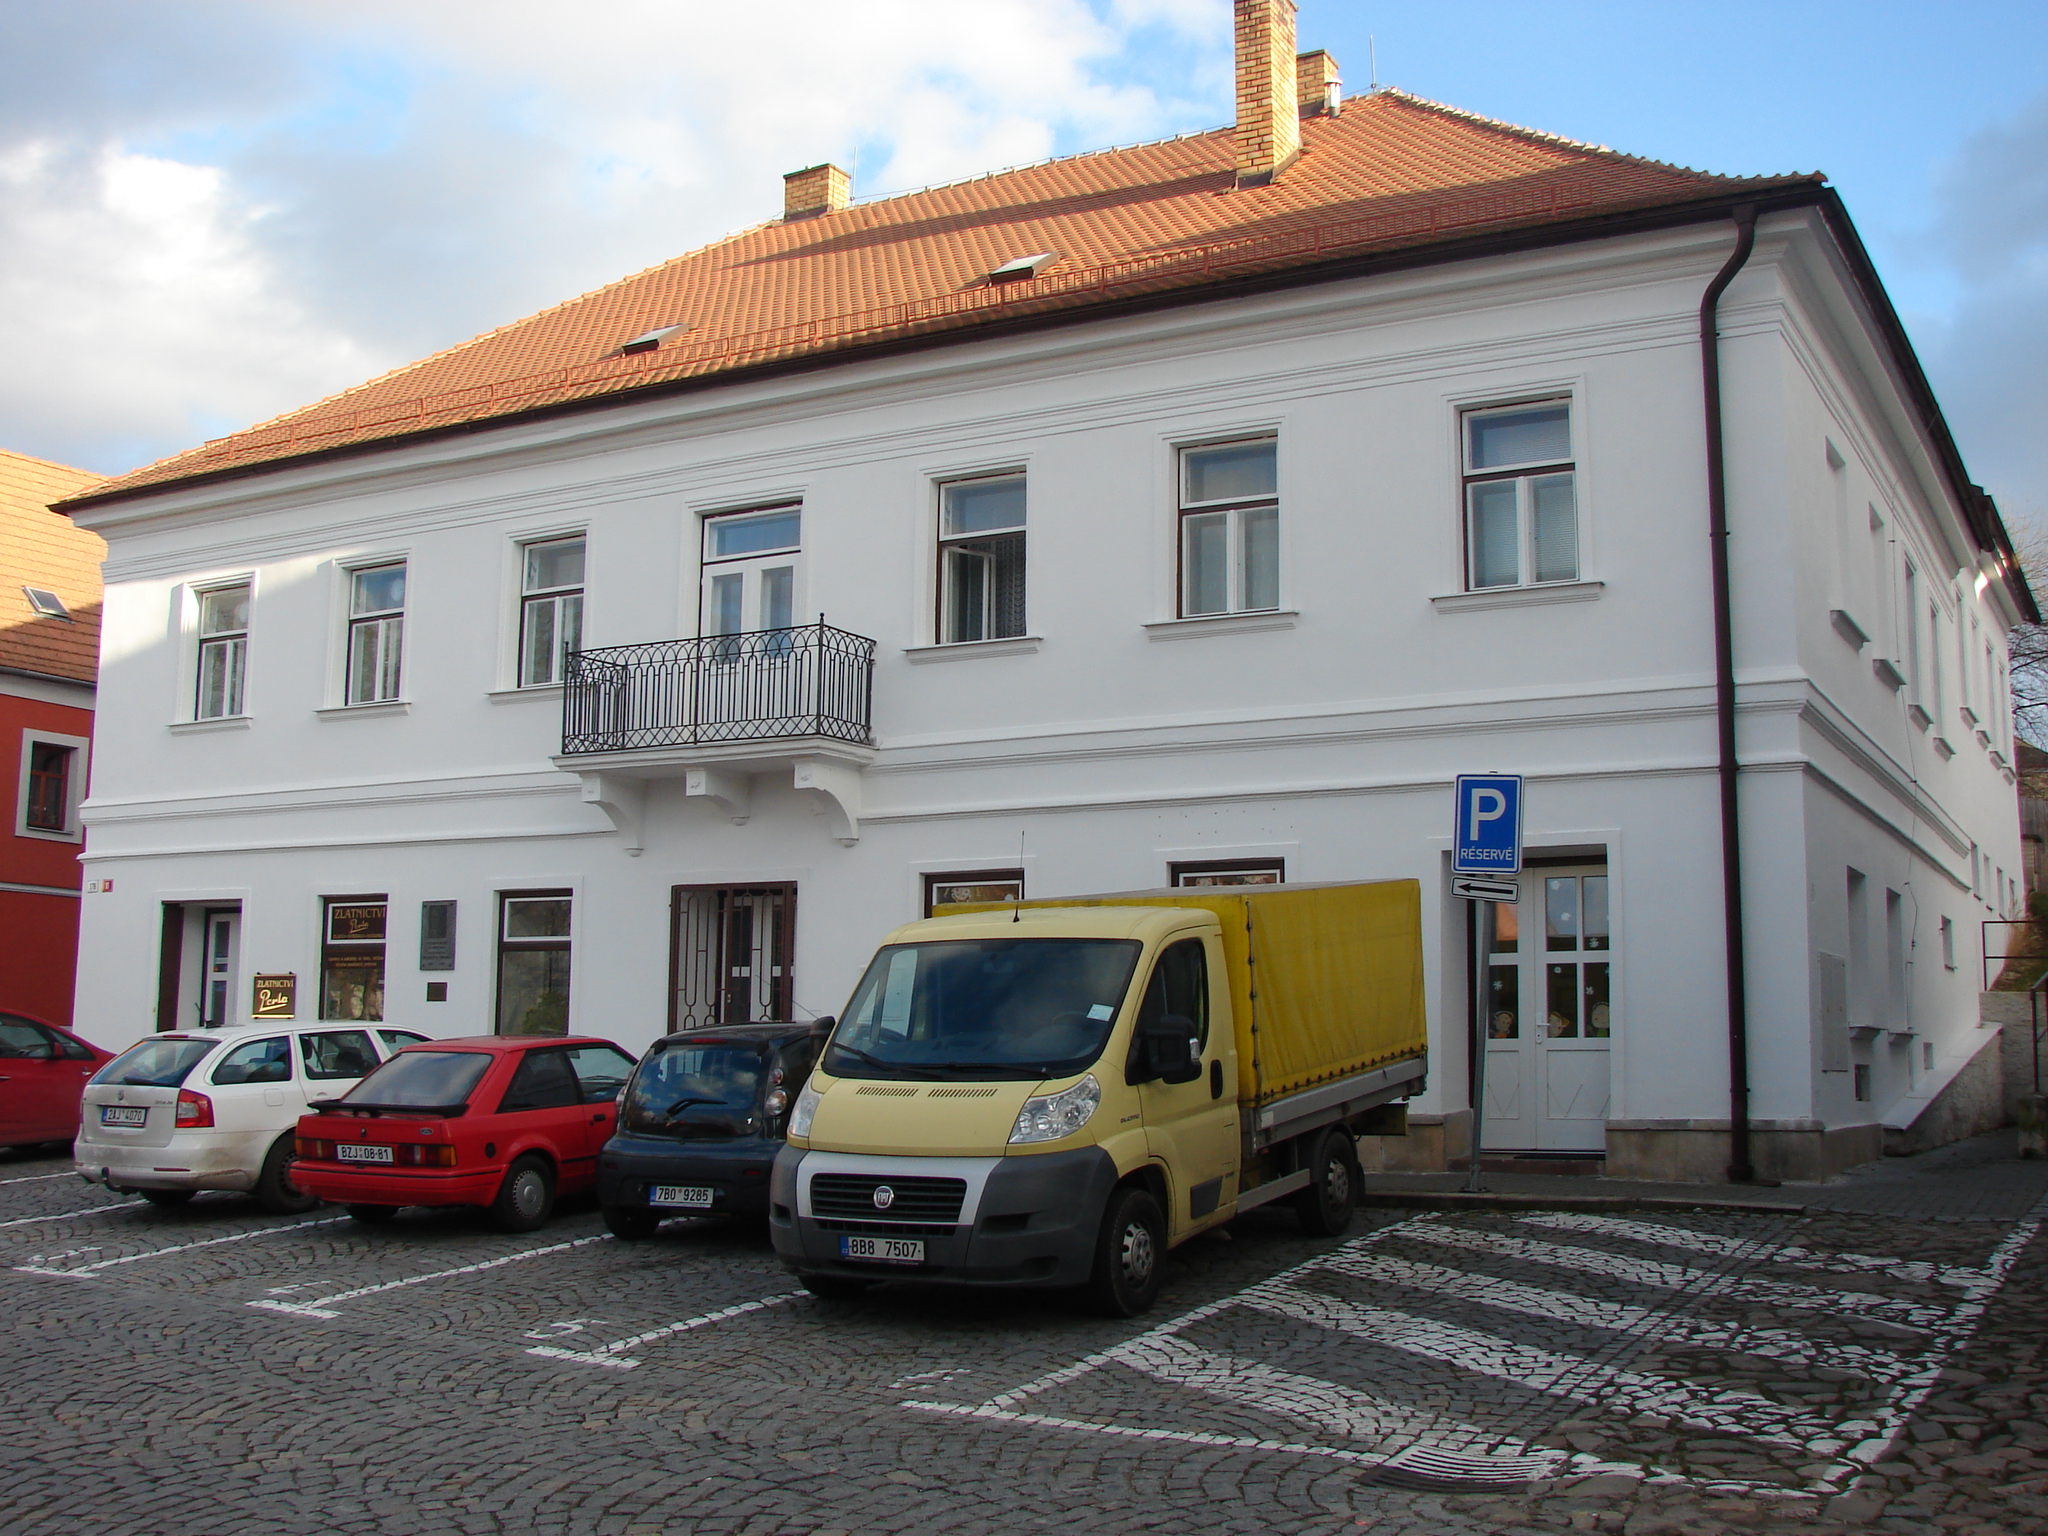 Zvyšování nájmu čeká obecní byty, například v tomto domě na Zborovské ulici